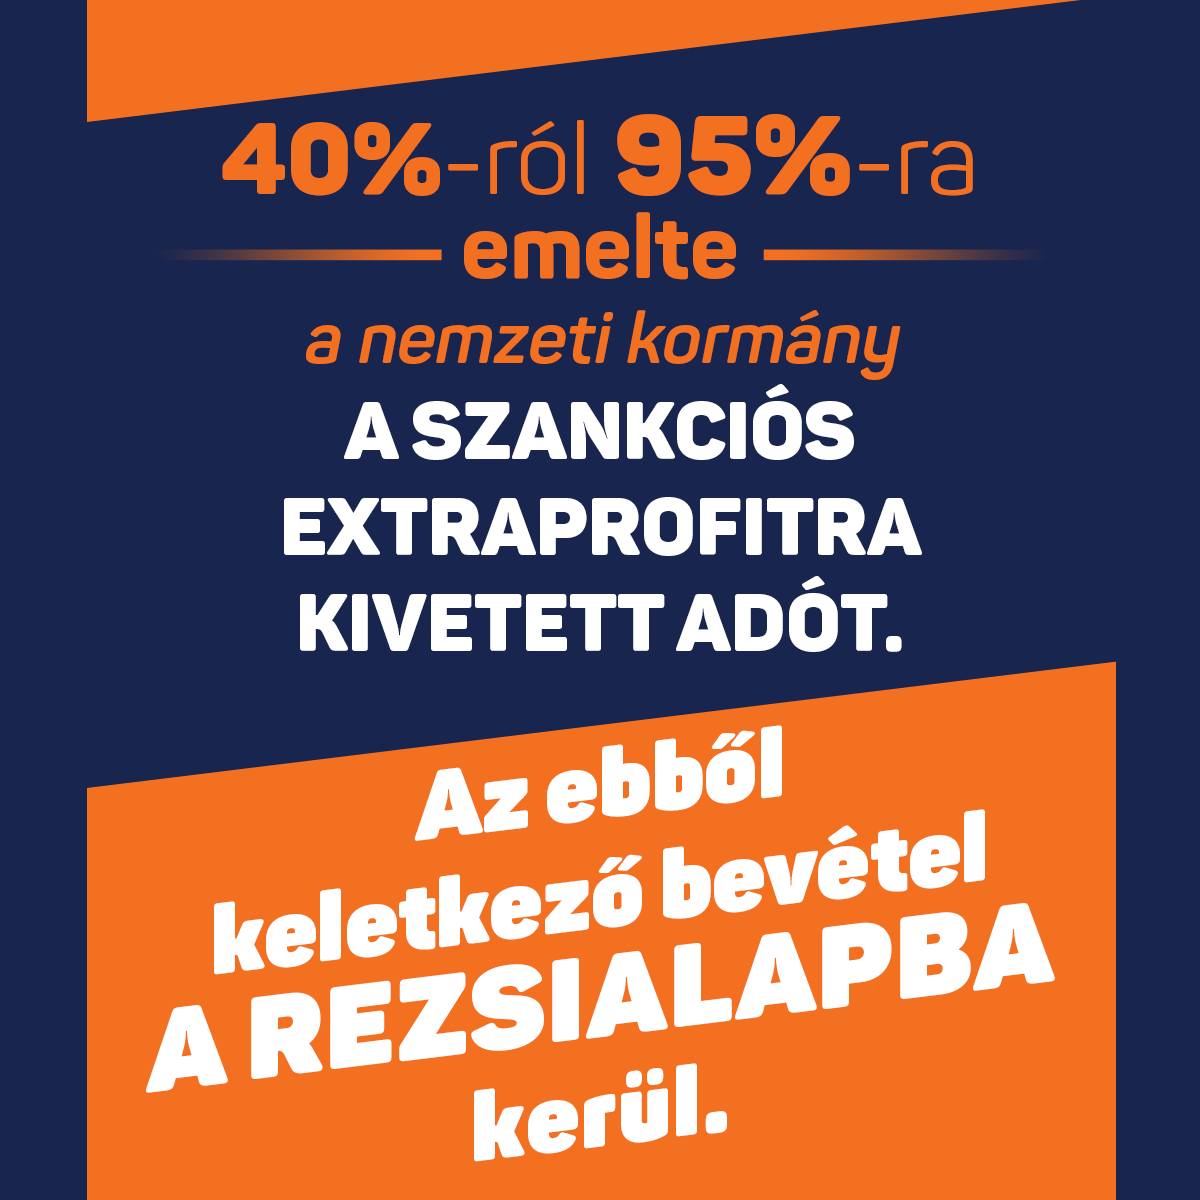 Az elhibázott brüsszeli döntések miatt egész Európában szankciós benzinárak vannak. A MOL-ra 95%-os extraprofitadót vetett ki a nemzeti kormány. A pluszbevételt a rezsivédelmi alapba irányítjuk. Megvédjük a magyar családokat!